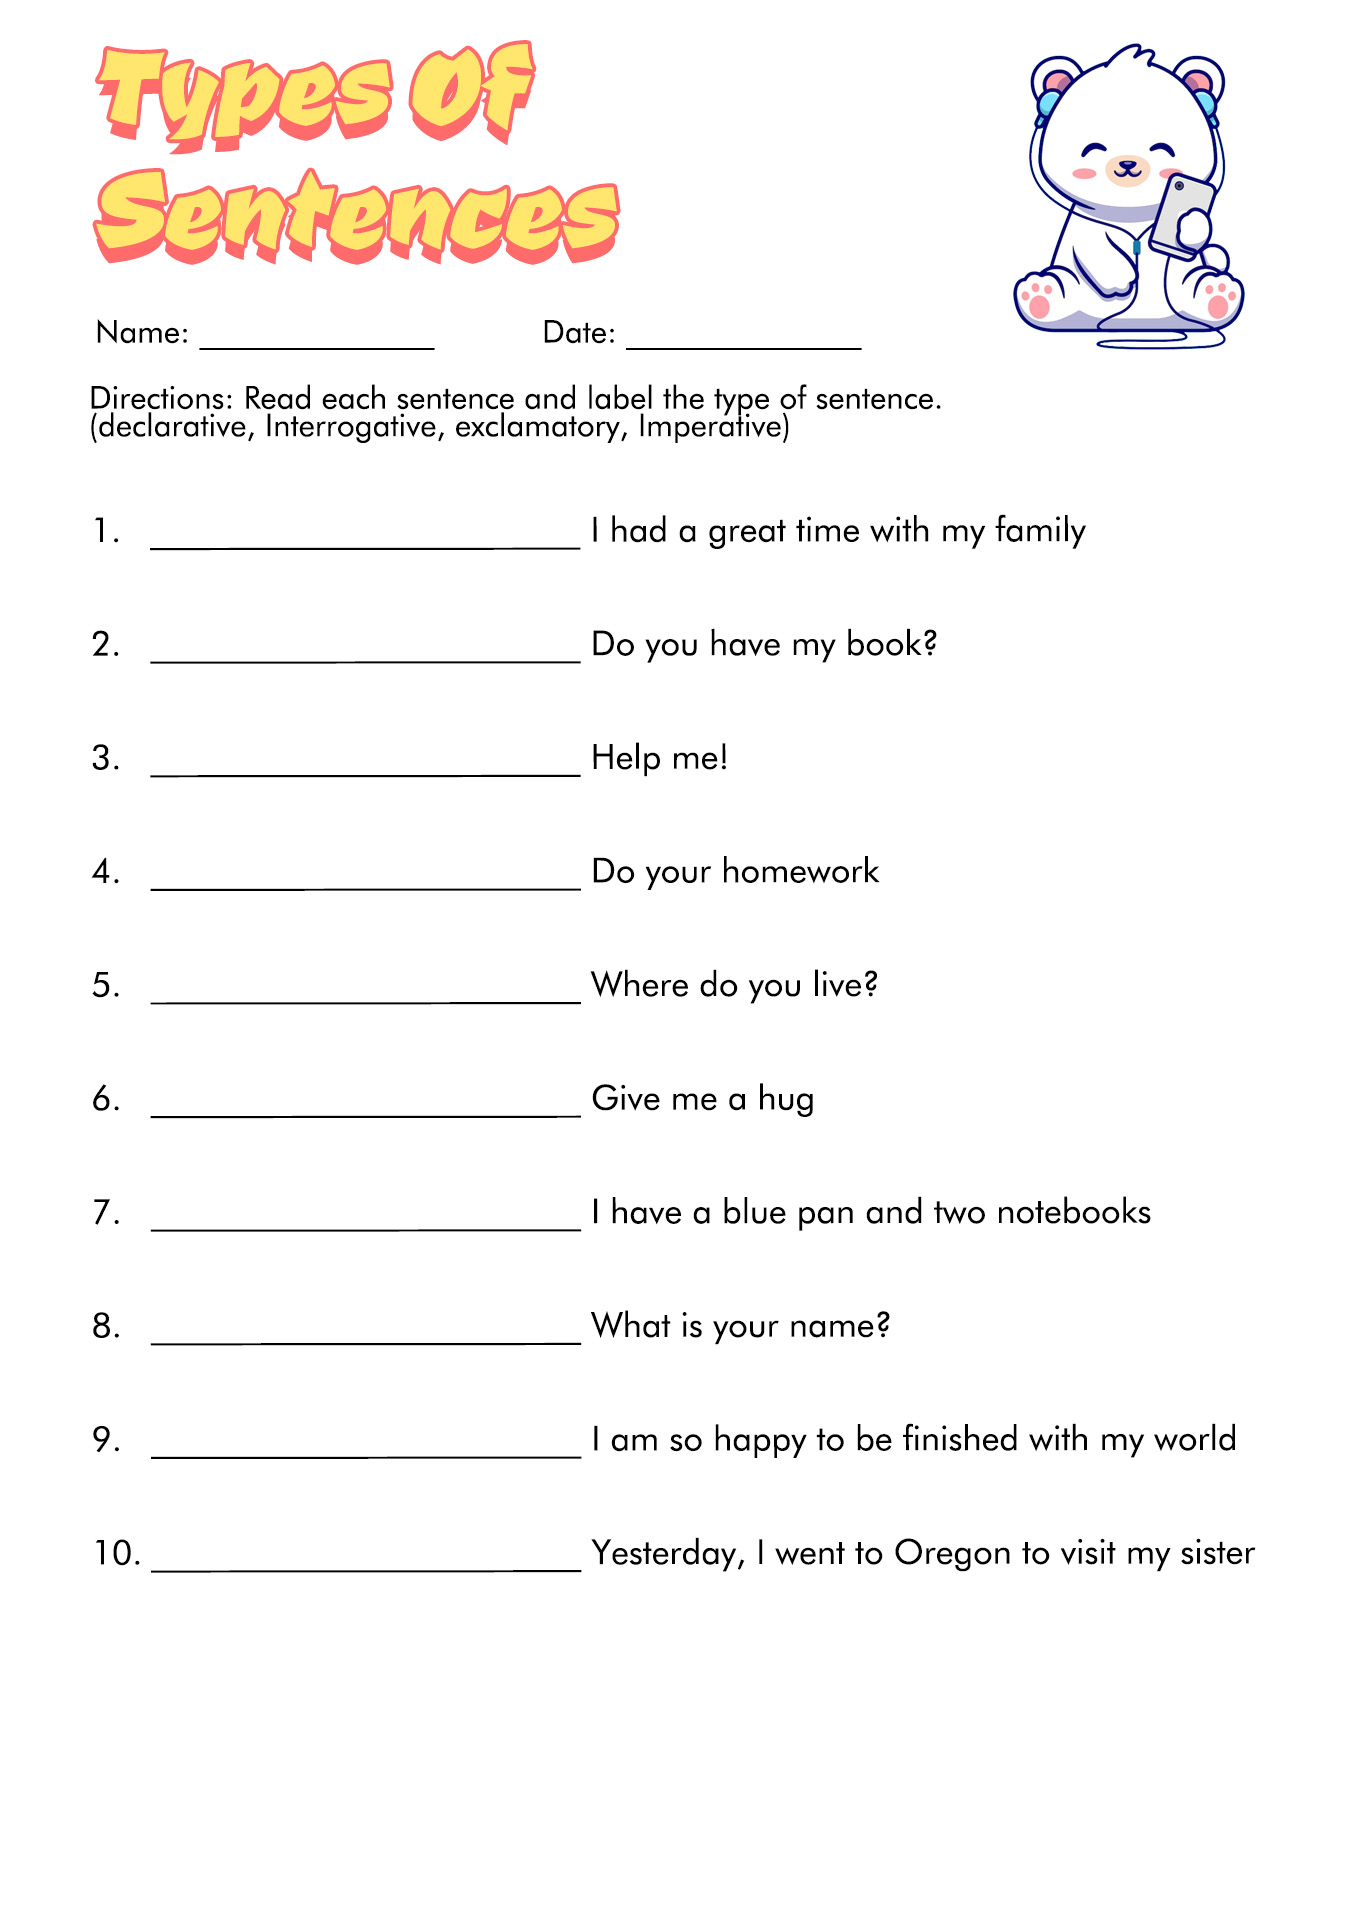 18-4-types-of-sentences-worksheets-free-pdf-at-worksheeto